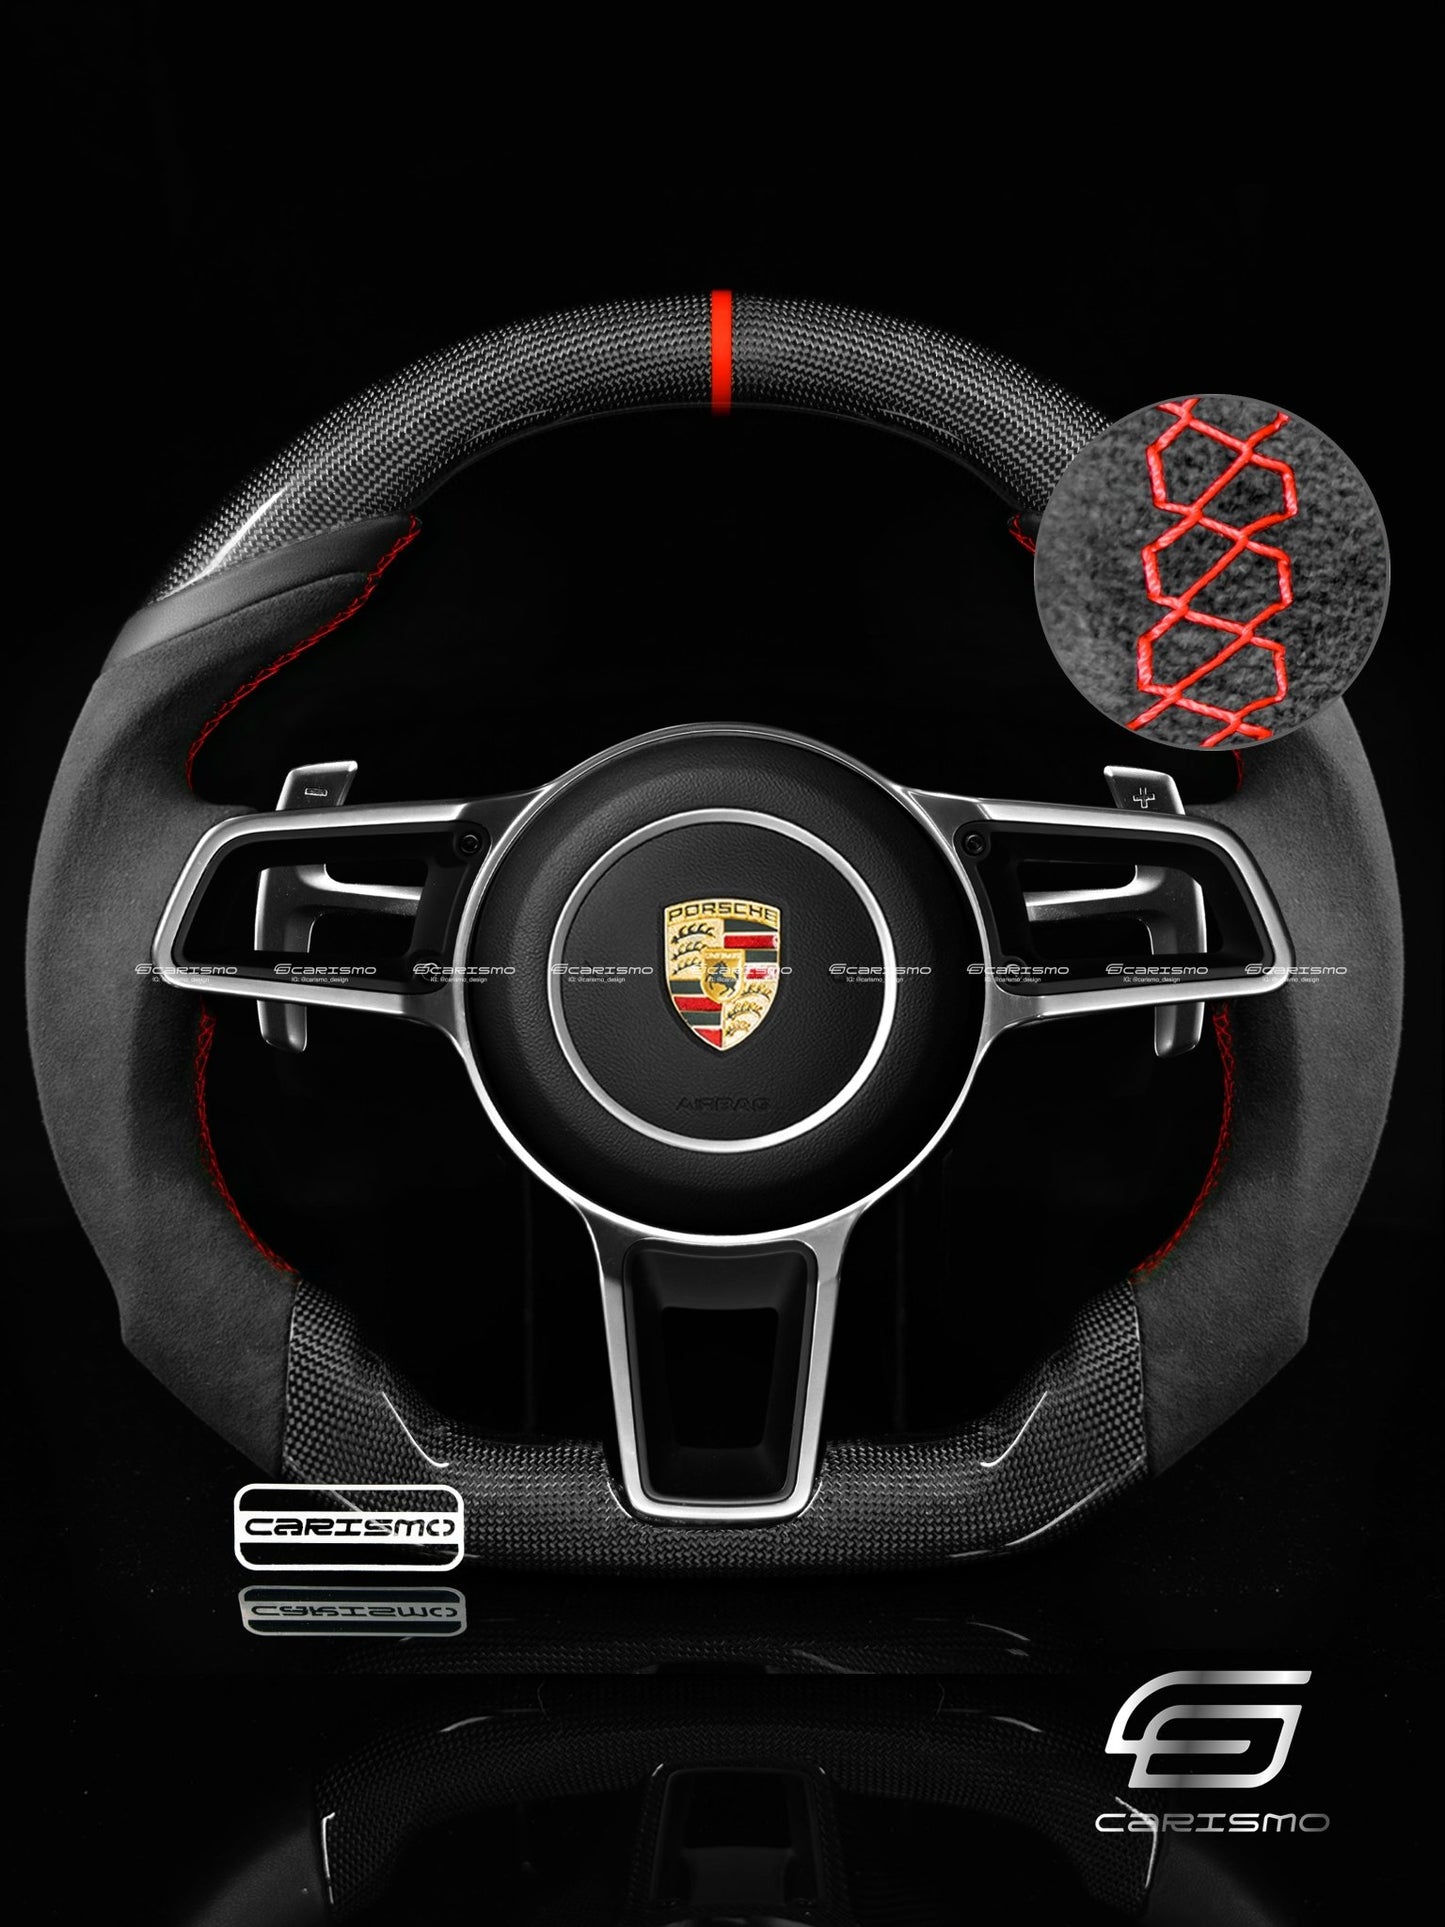 Carismo Steering Wheel For Porsche 911 (991.2 with Dials) - Sport - Gloss Plain Carbon - Alcantara - Carismo